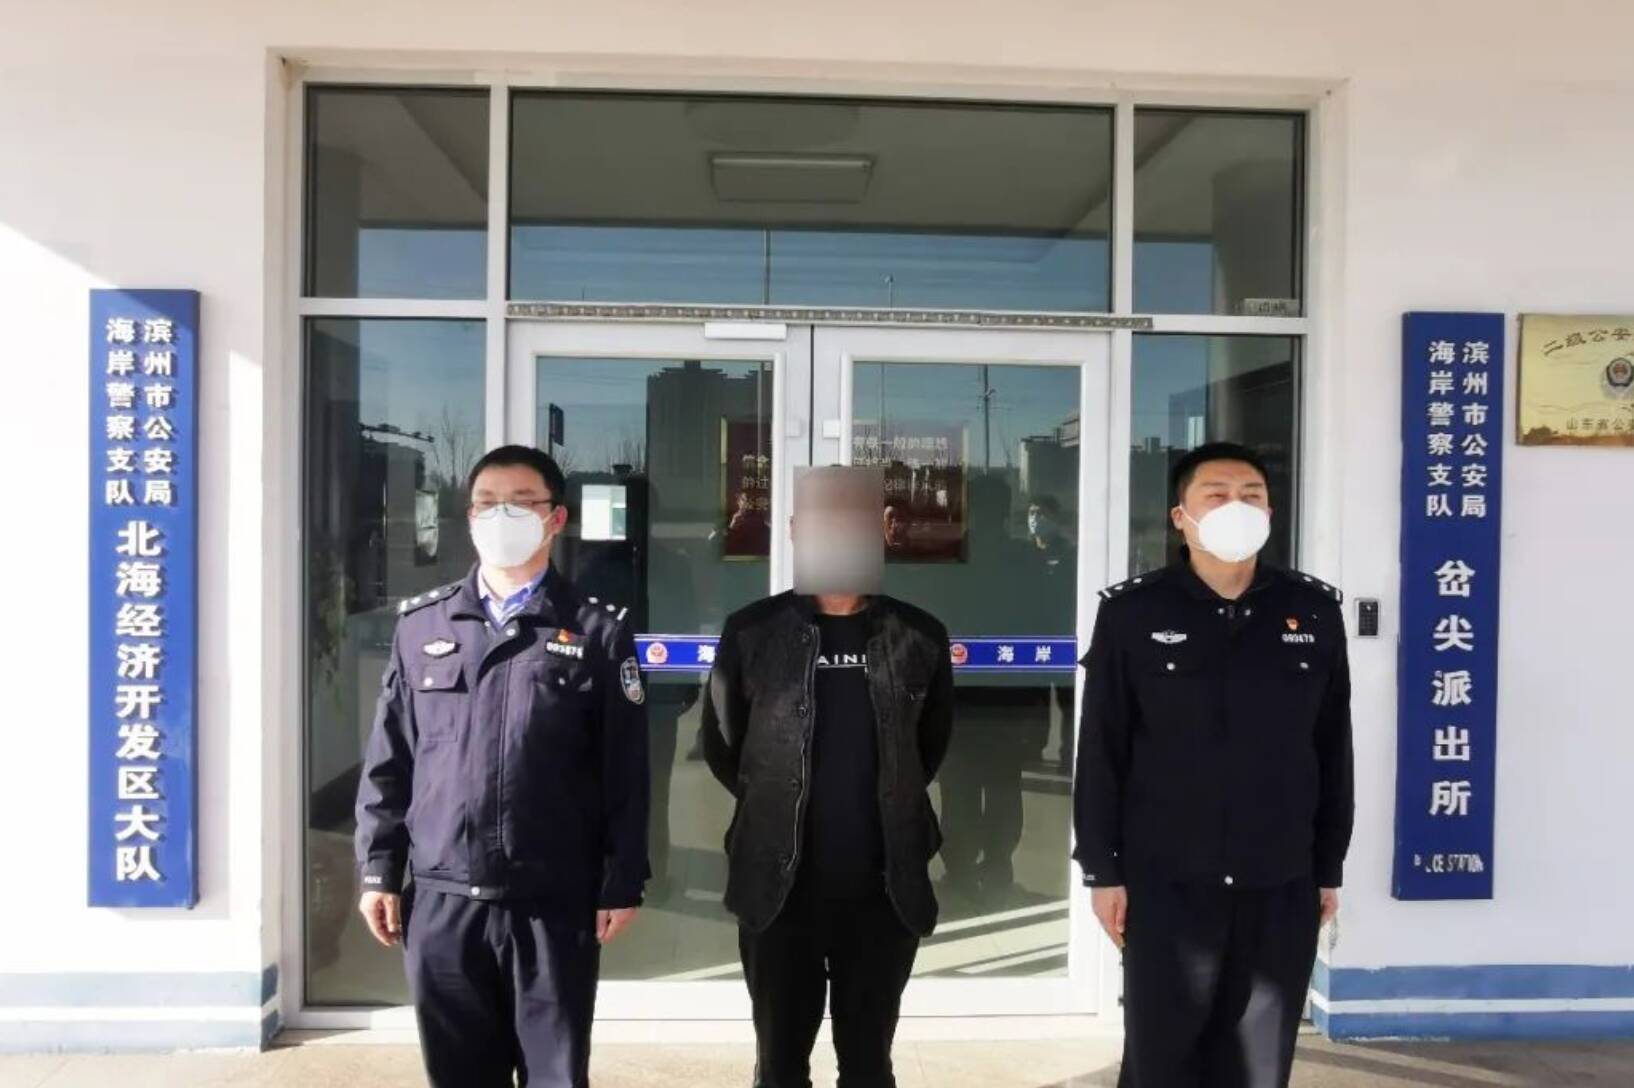 一人冒用他人行程码企图躲避工作人员检查被滨州北海警方处罚